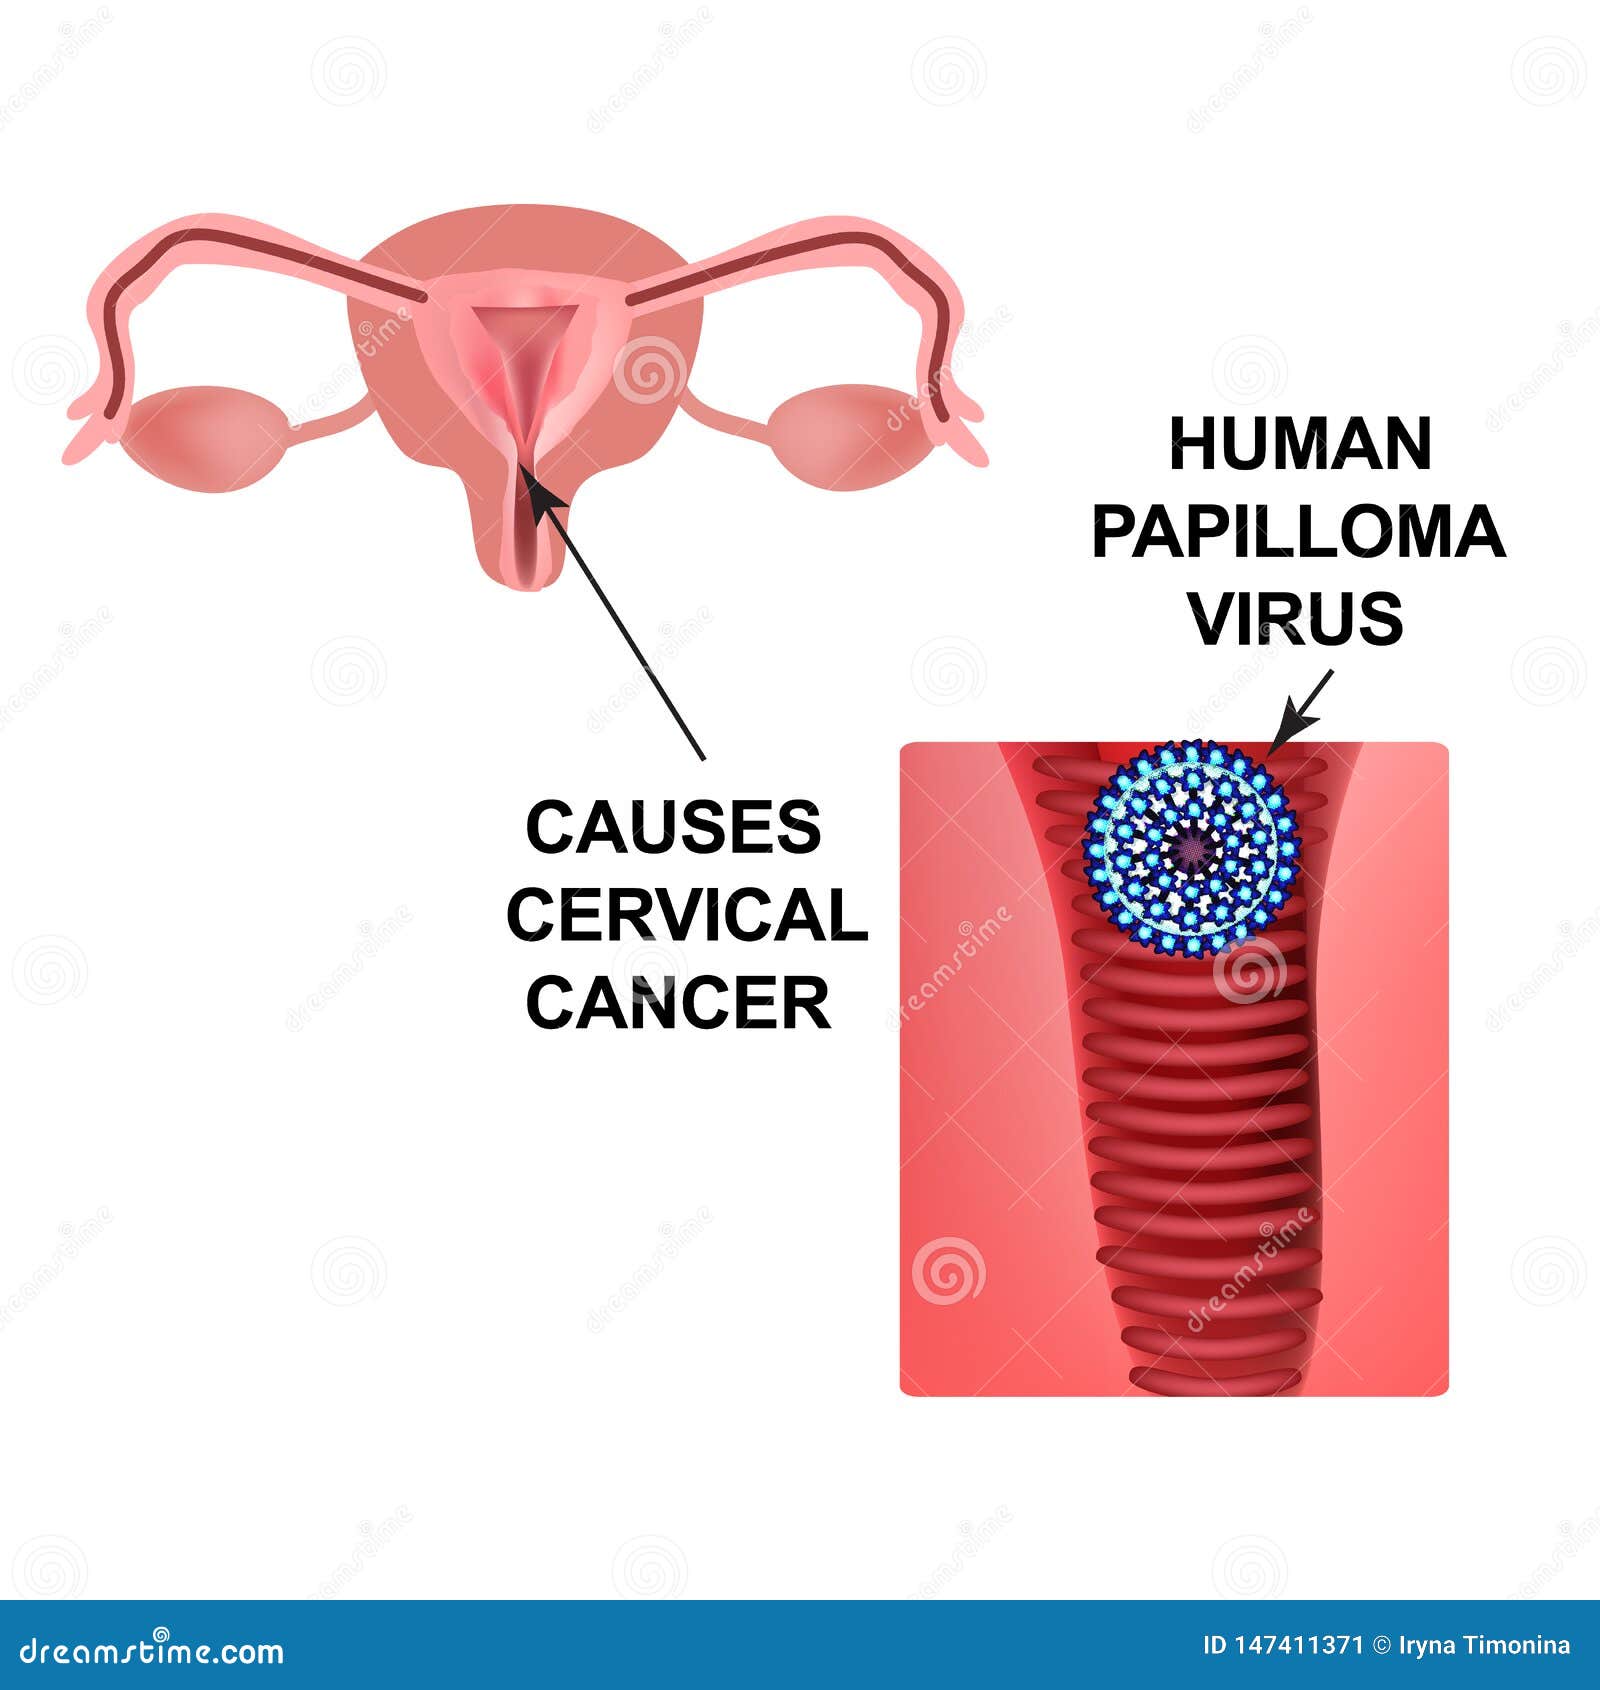 papilloma rák vírus hpv anogenitális fertőzés icd 10